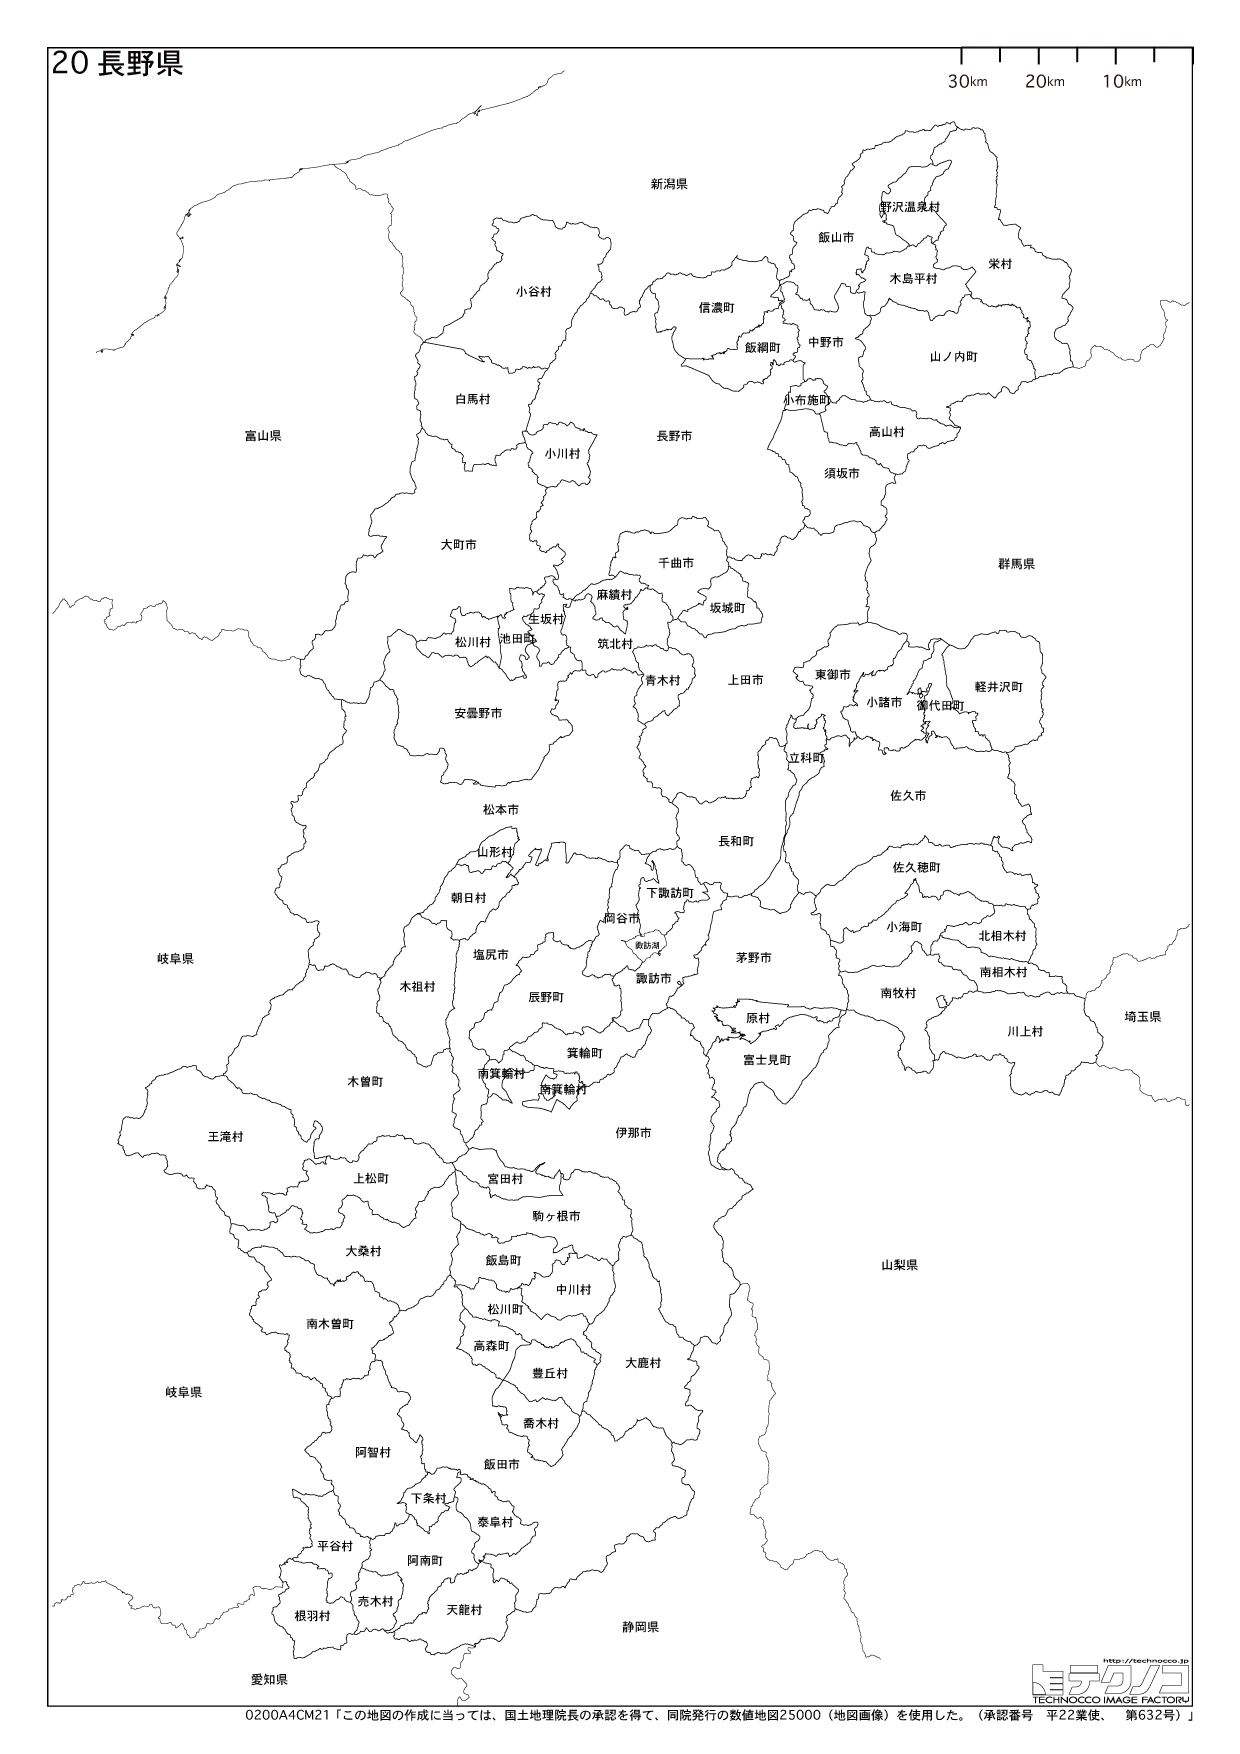 長野県の白地図と市町村の合併情報